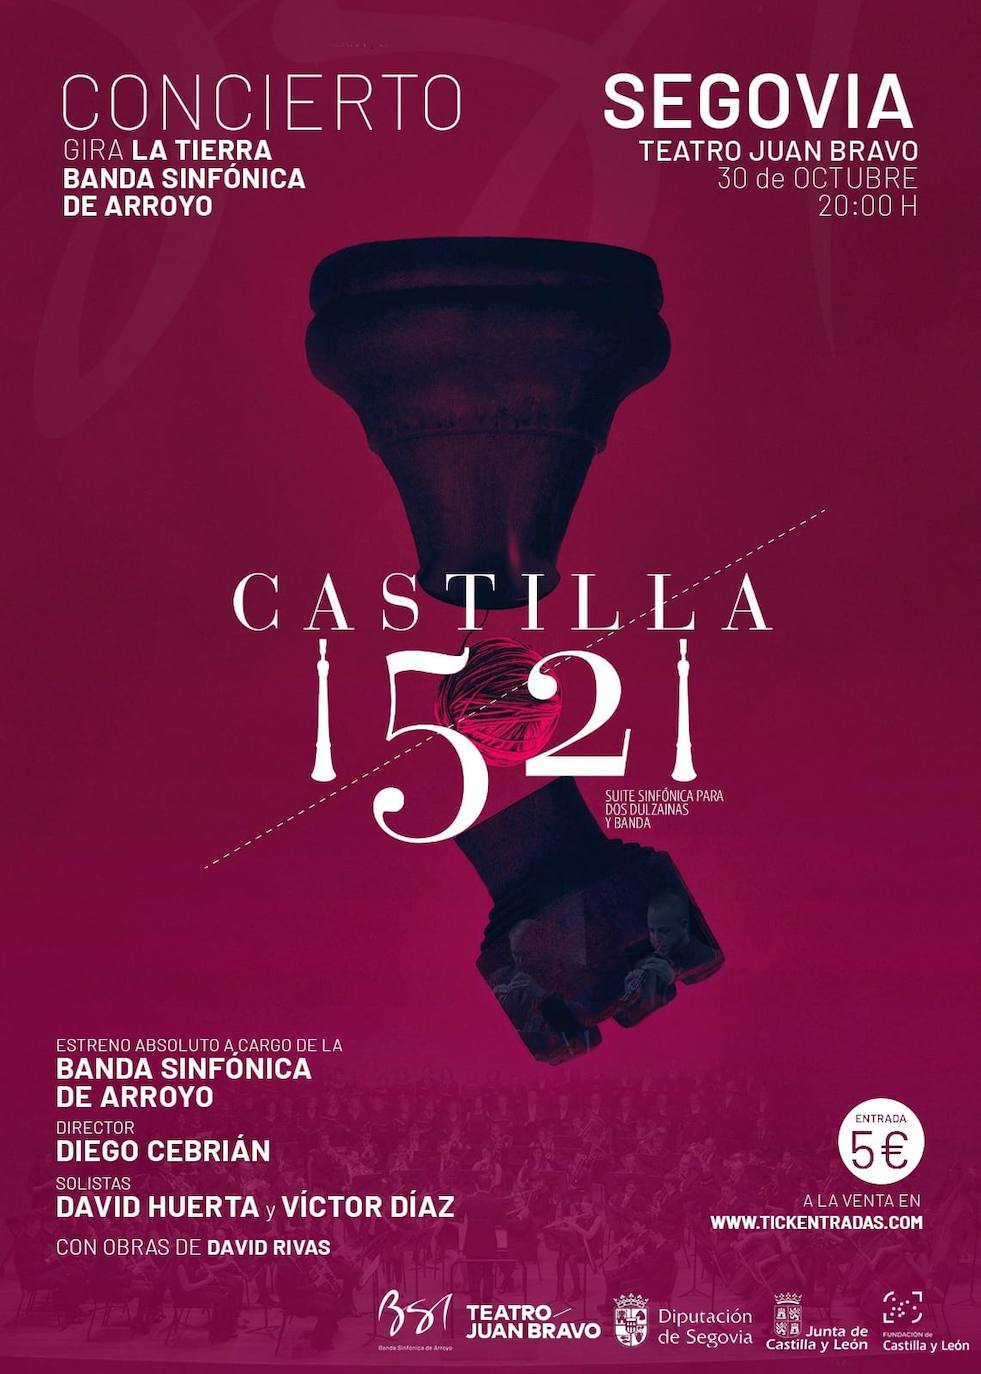 Cartel del gran evento musical que se celebrará en Segovia